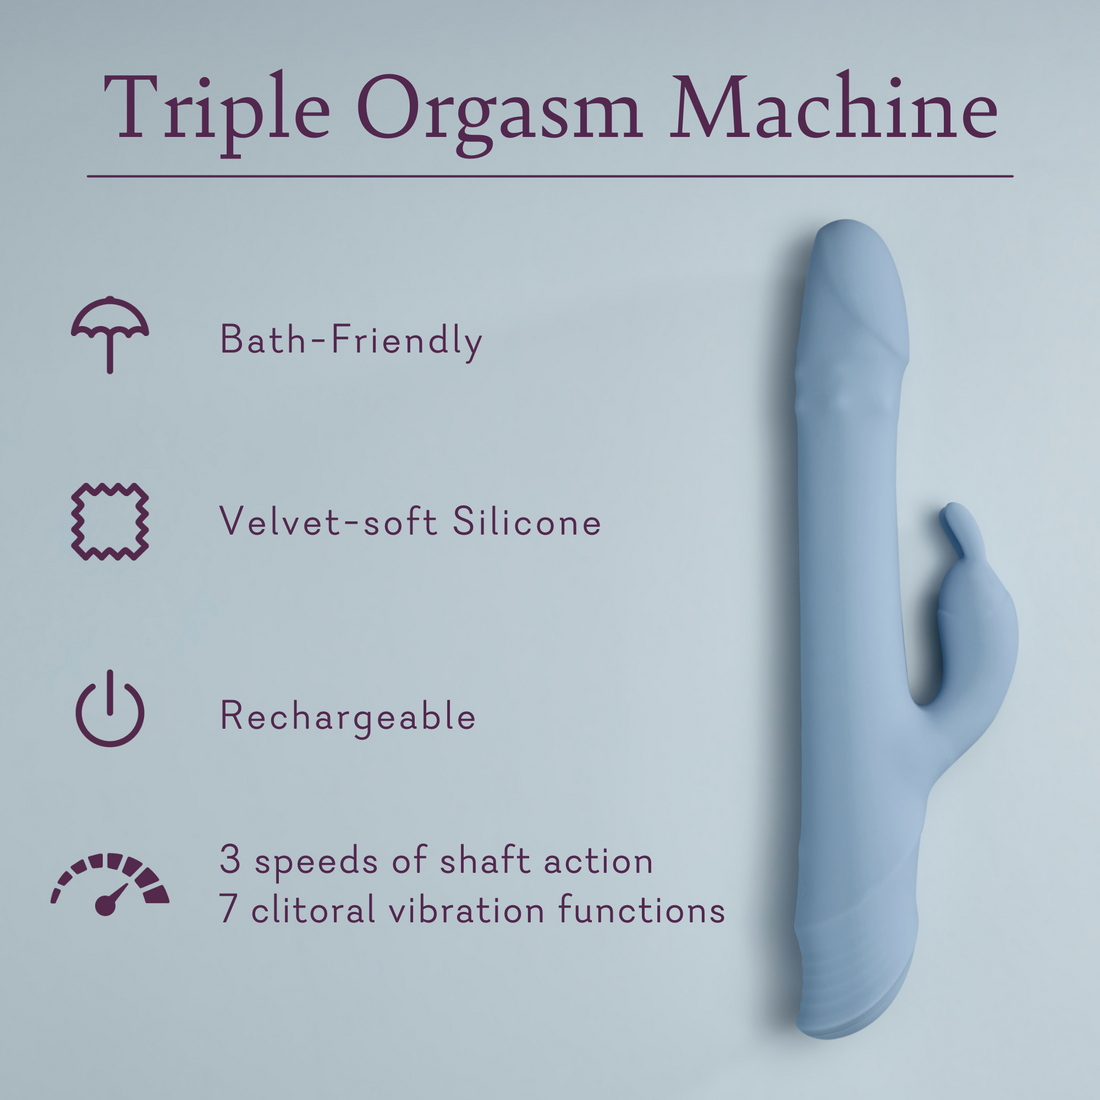 Triple Orgasm Machine